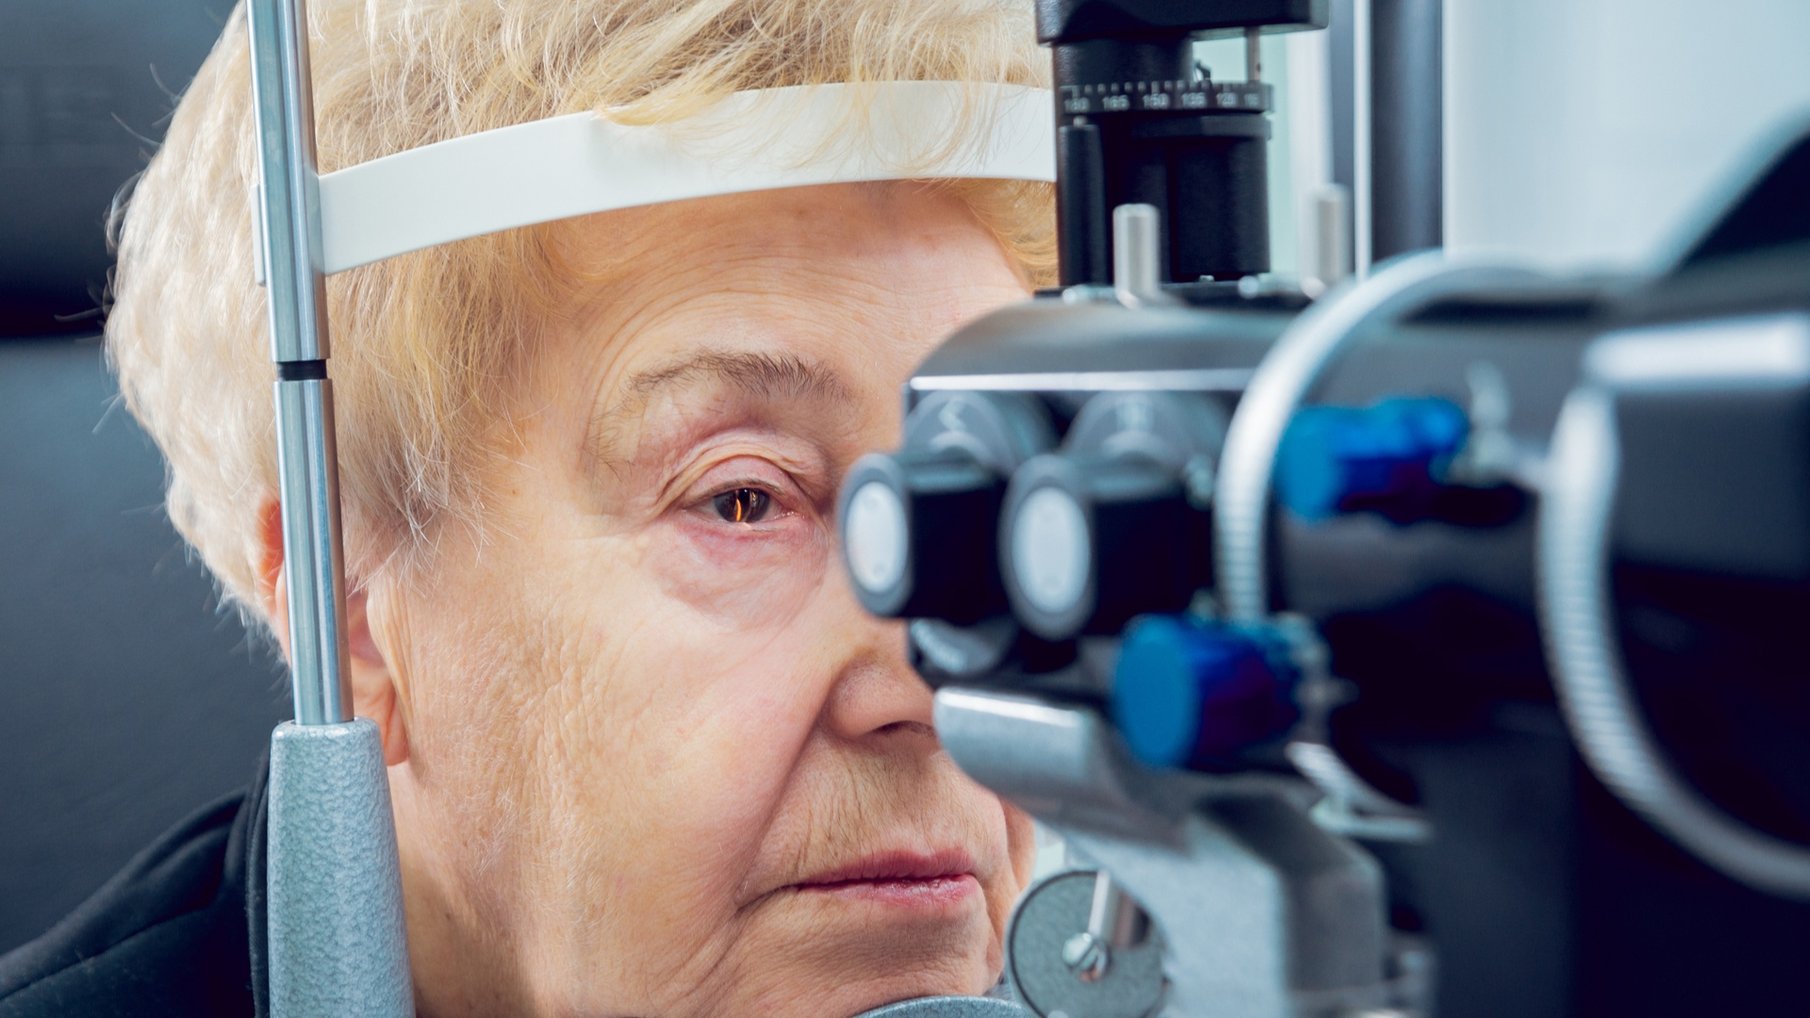 Incapacidad por miopía magna: Sentencia estima la demanda de una limpiadora que padece miopía en un ojo.